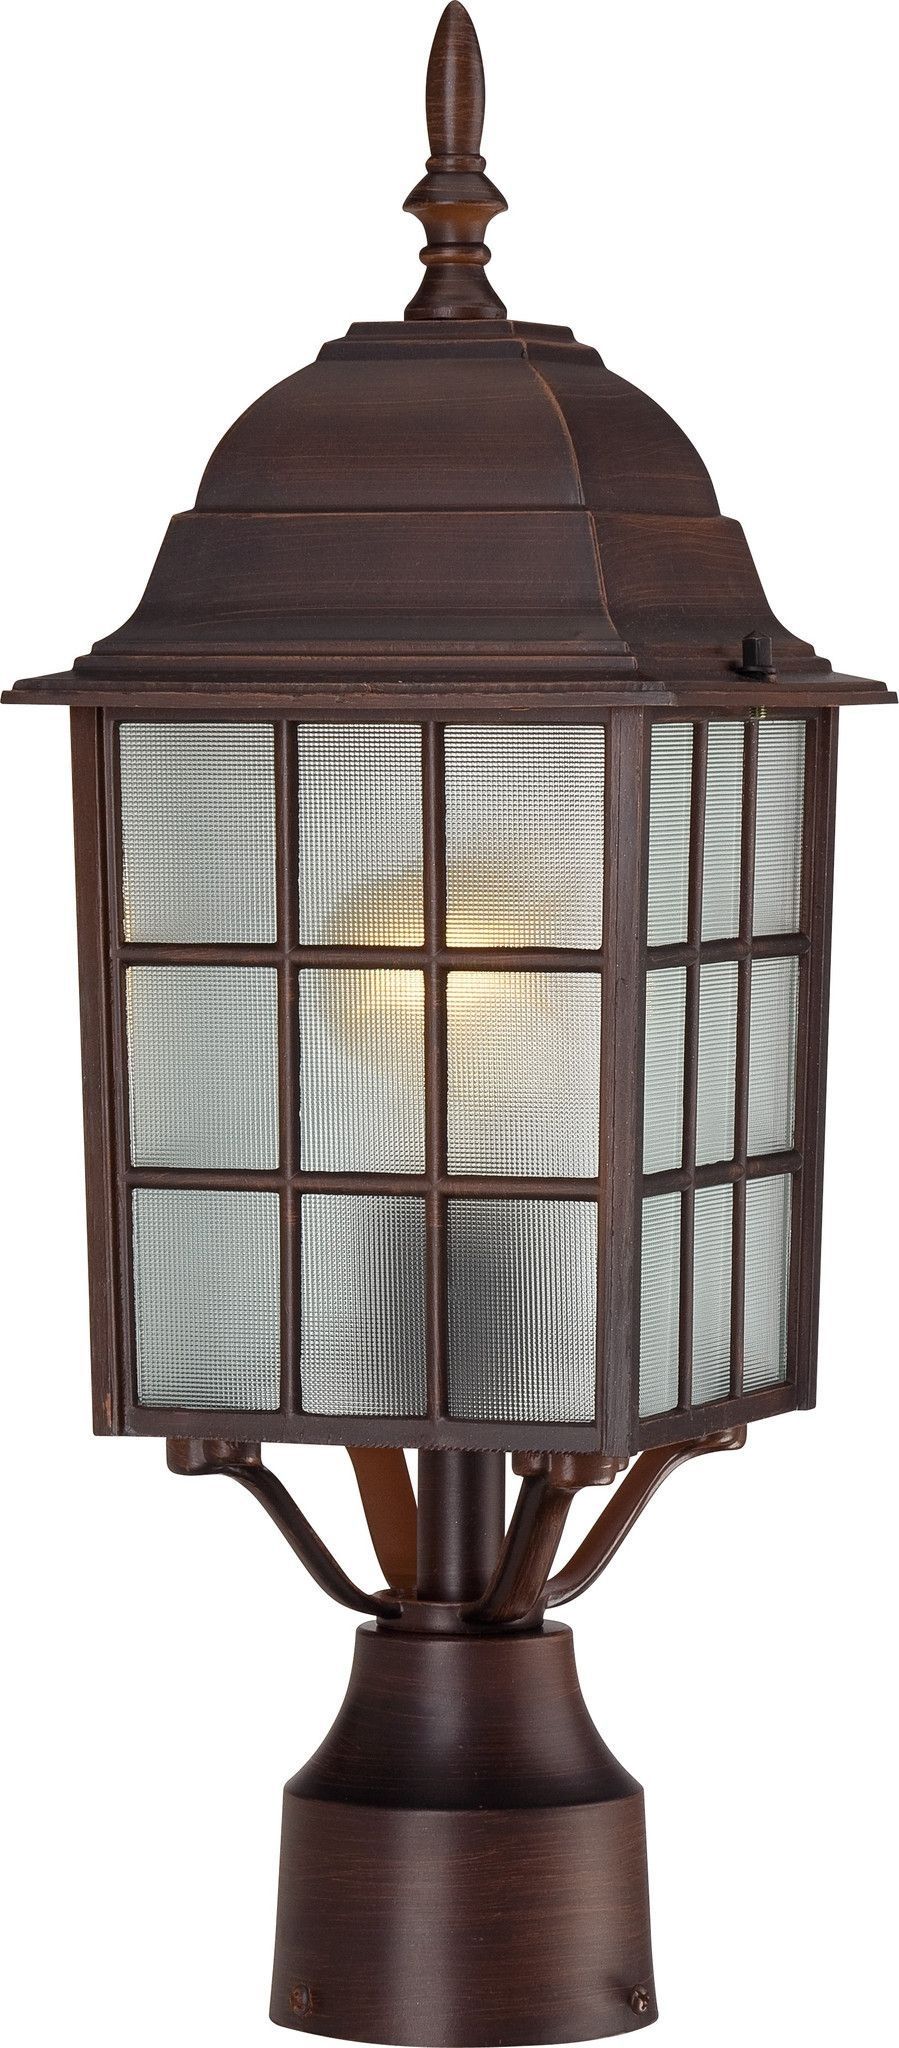 17" Outdoor Lamp Post Lights In Rustic Bronze Finish | Outdoor Lamp In Outdoor Lamp Lanterns (Photo 18 of 20)